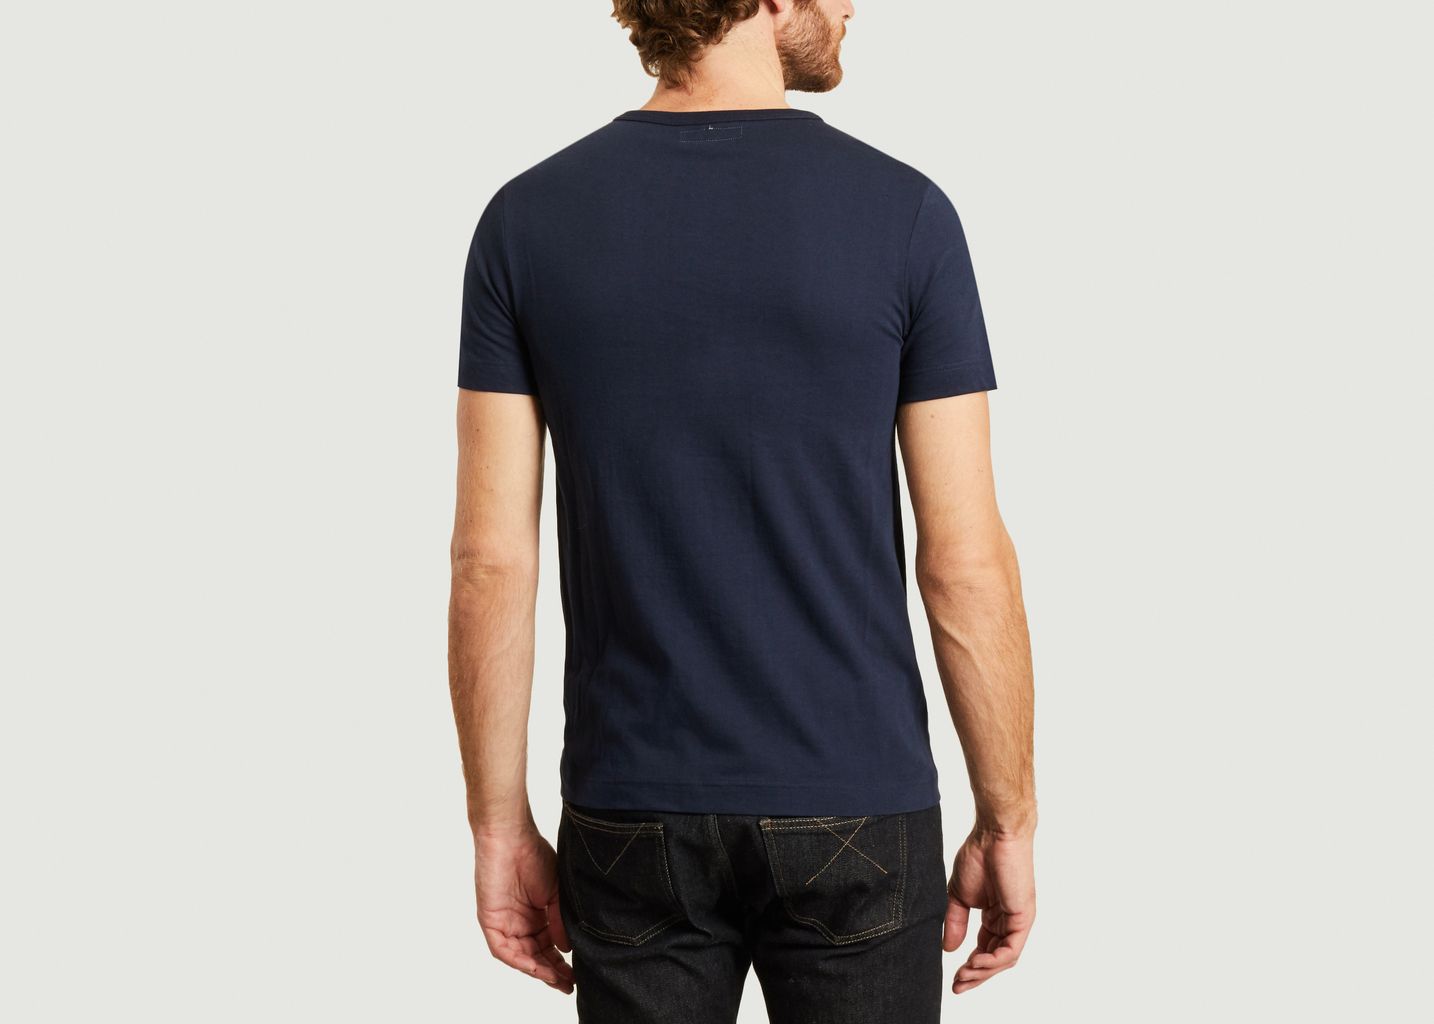 1950s organic cotton t-shirt - Merz b Schwanen